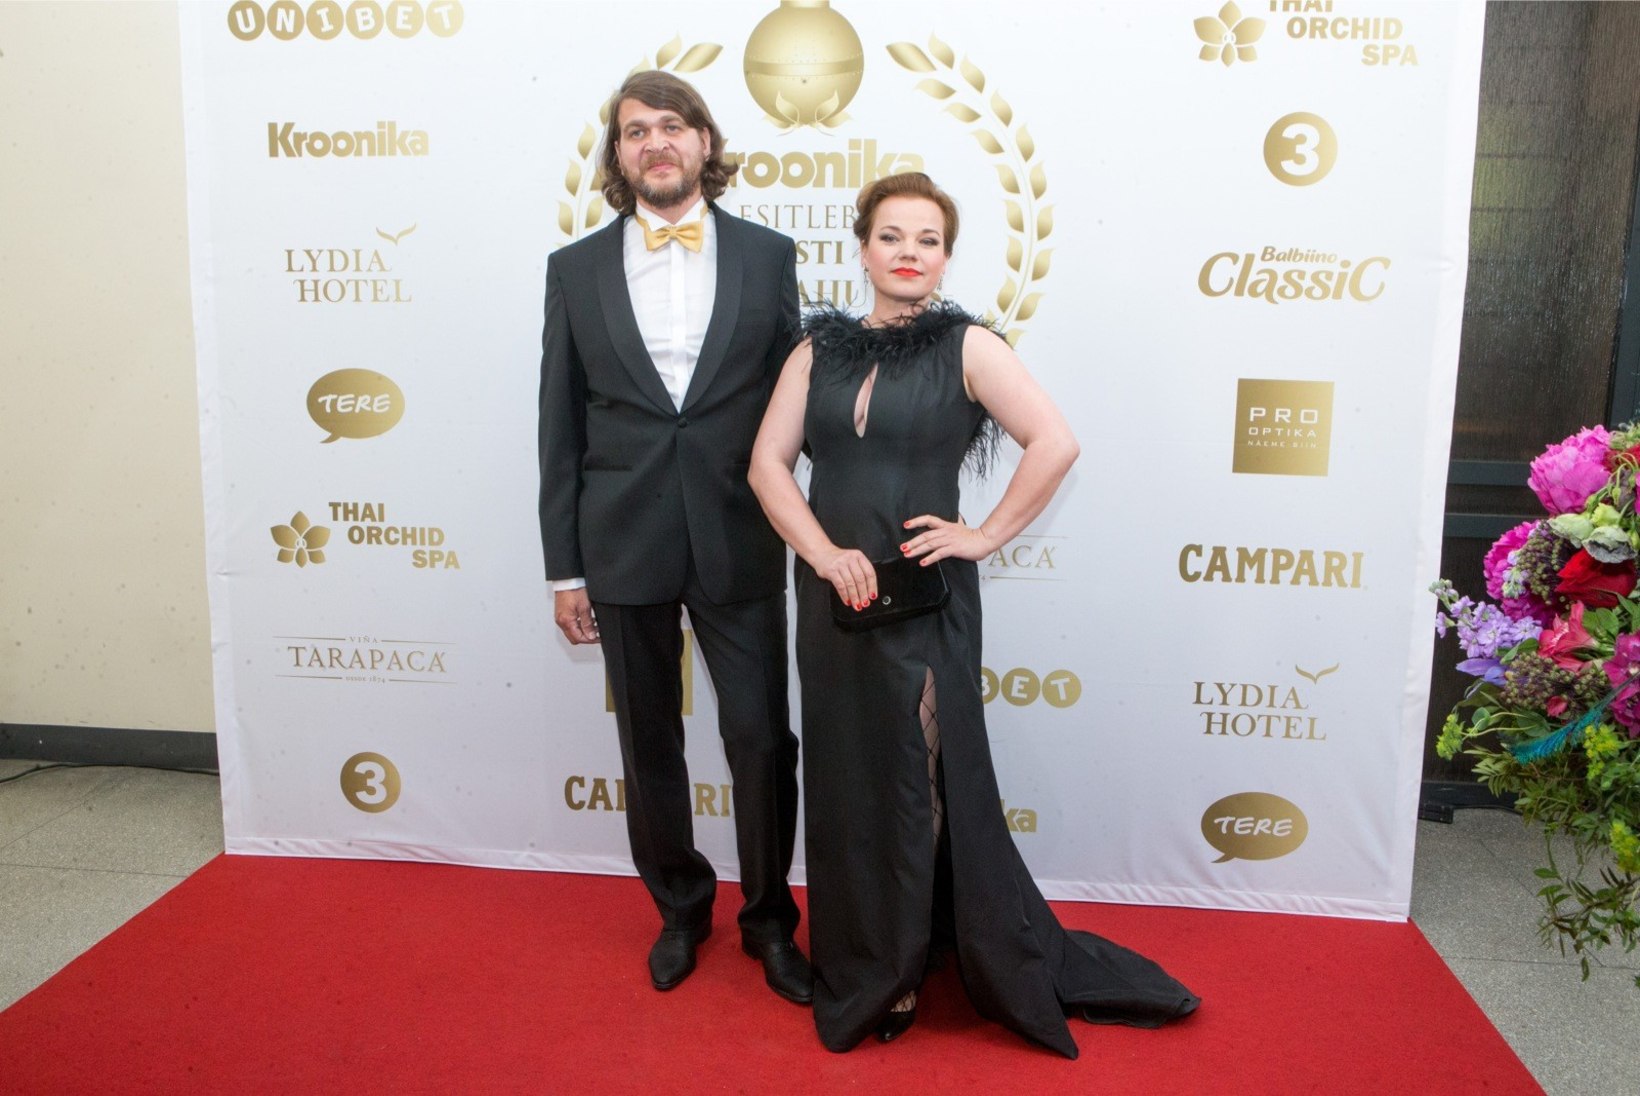 FOTO | Nii suured! Tuuli Roosma ja Arbo Tammiksaare kaksikud on juba noorteks meesteks kasvanud